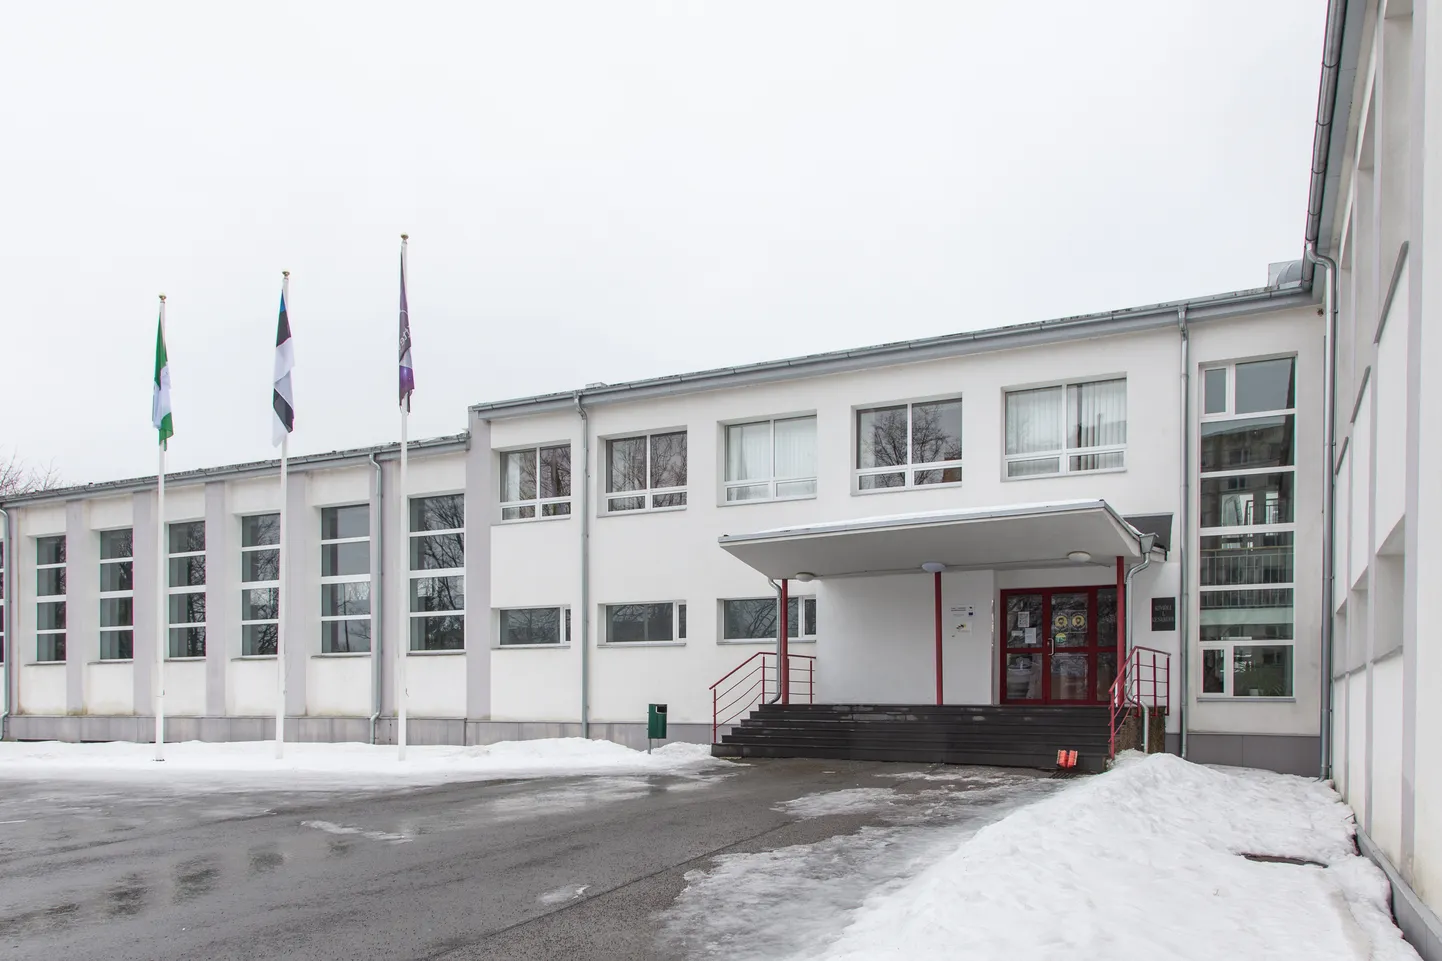 Из нынешнего здания Кивиылиской 1-й средней школы получится главное учебное место будущей Кивиылиской государственной школы, ведь здание русской школы планируется в дальнейшем закрыть.